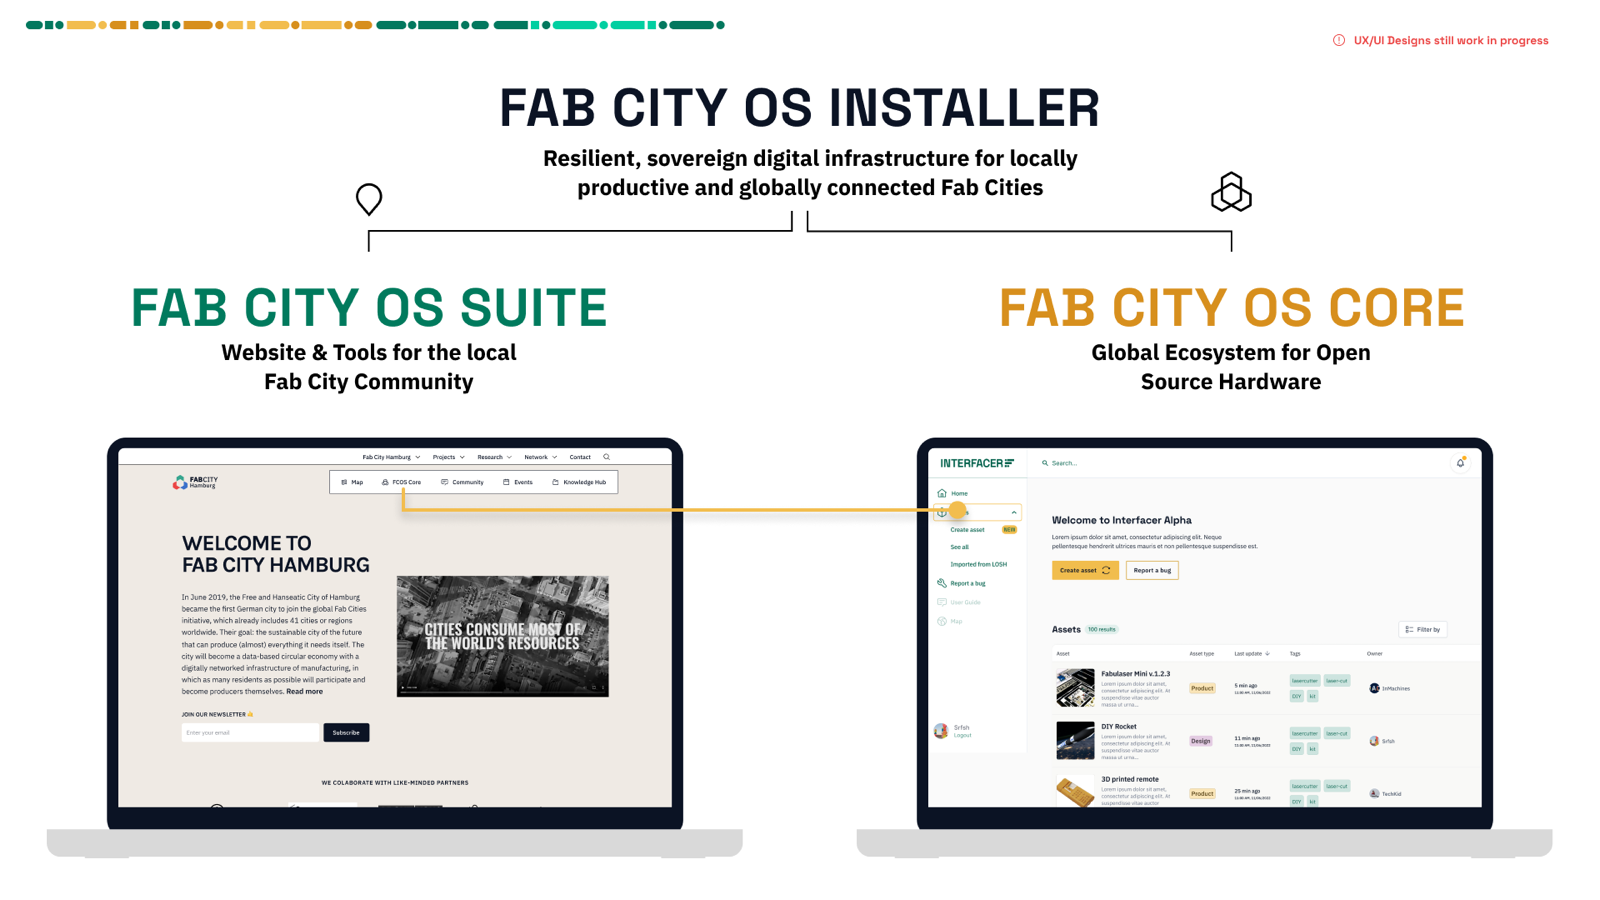 Fab City OS ist eine Sammlung verschiedener Open-Source-Softwarelösungen, die in die "Fab City OS Suite" und das "Fab City OS Core"-Netzwerk unterteilt sind. Über den Fab City OS Installer kann die Fab City OS-Software lokal gehostet werden, um Fab Cities eine hohe digitale Souveränität zu ermöglichen.